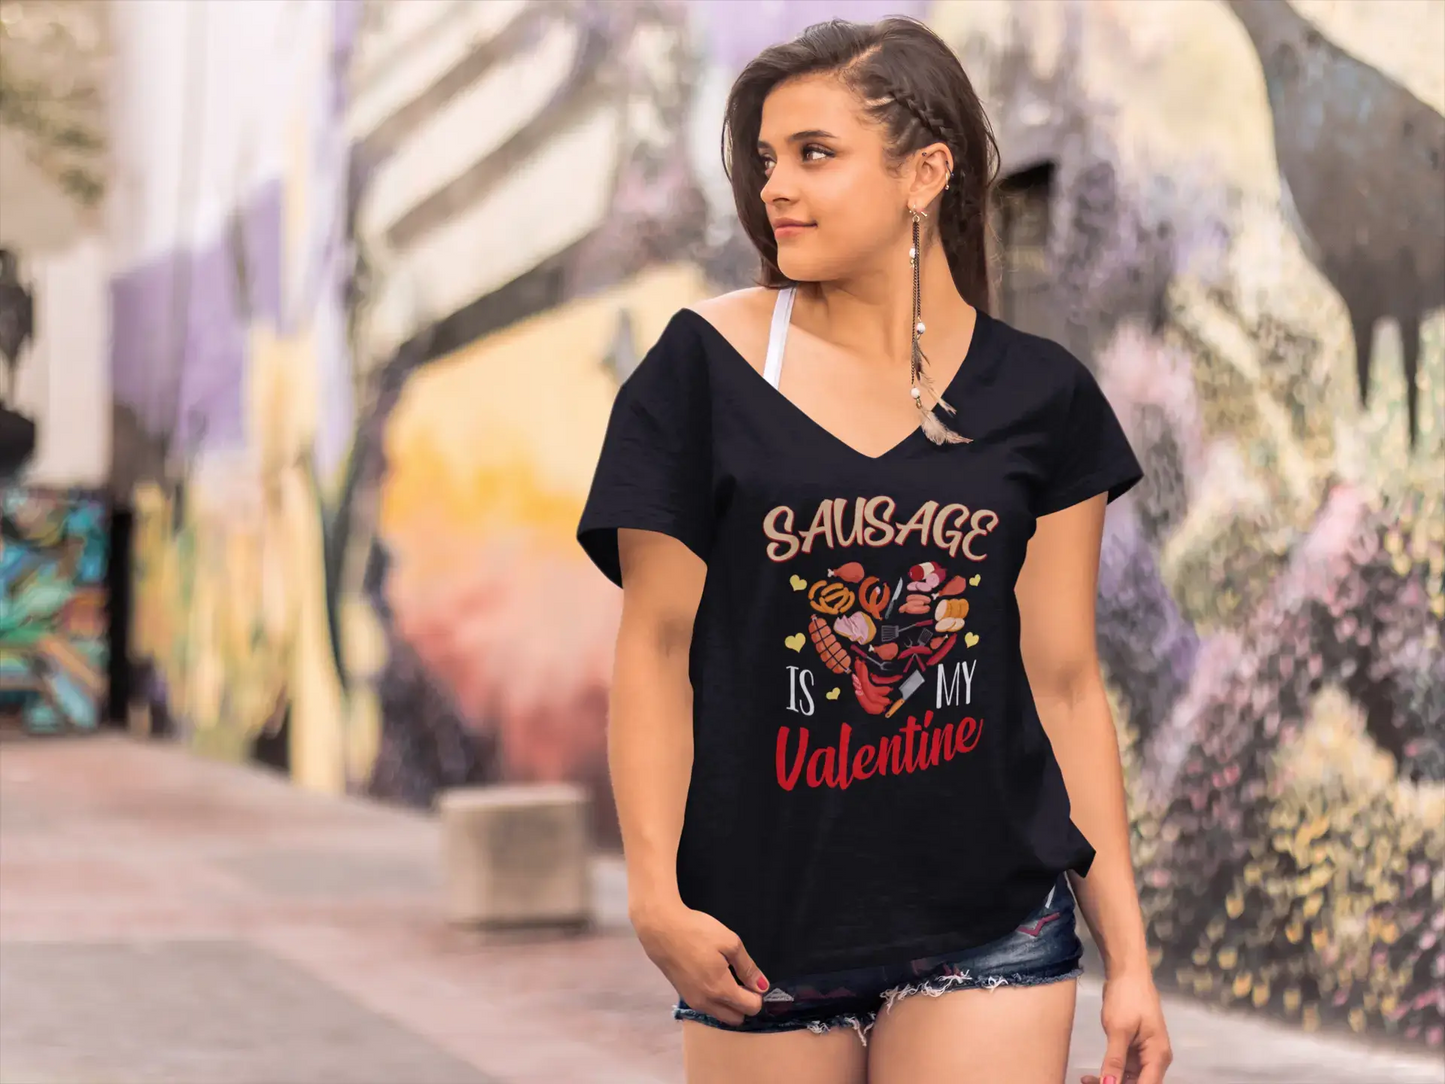 ULTRABASIC Damen T-Shirt Sausage Is My Valentine – Kurzarm-Grafik-T-Shirts zum Valentinstag